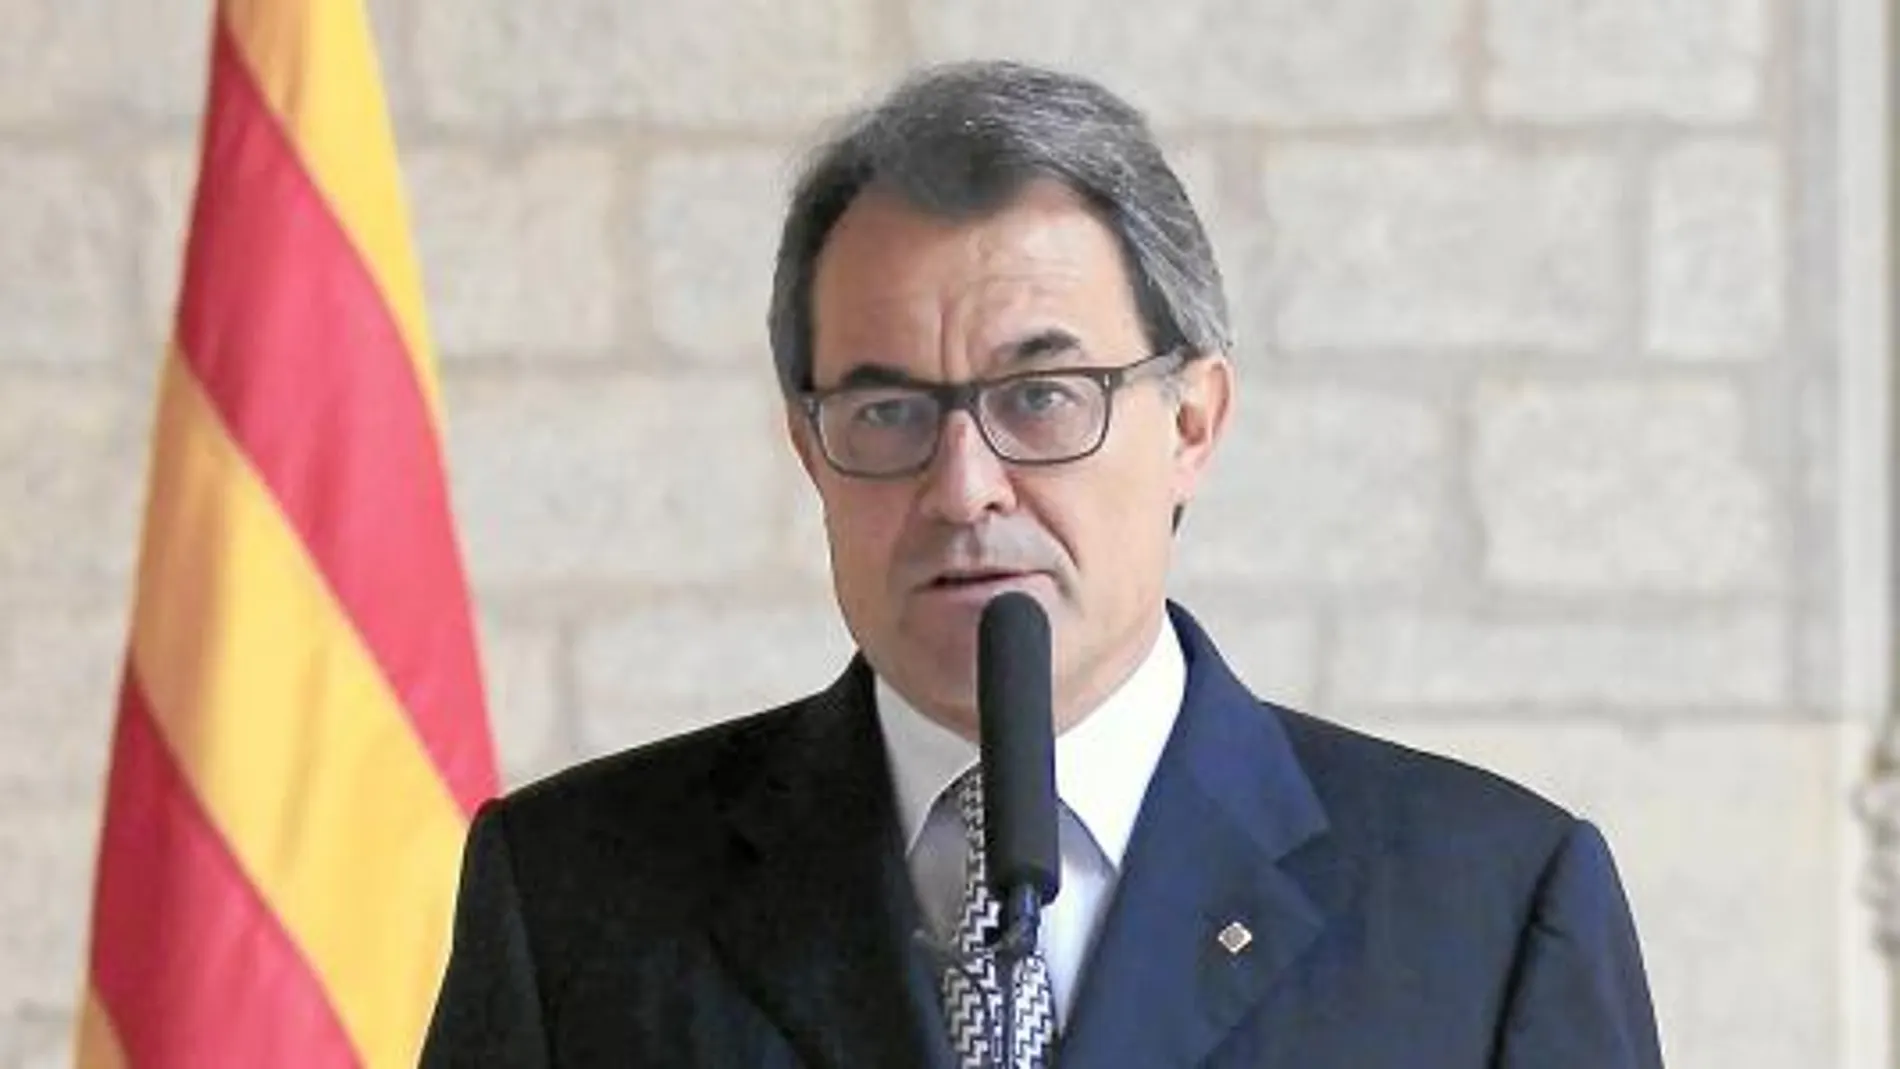 El Gobierno catalán asegura que el escándalo no afecta a su proyecto soberanista de cara a la reunión de hoy con Rajoy